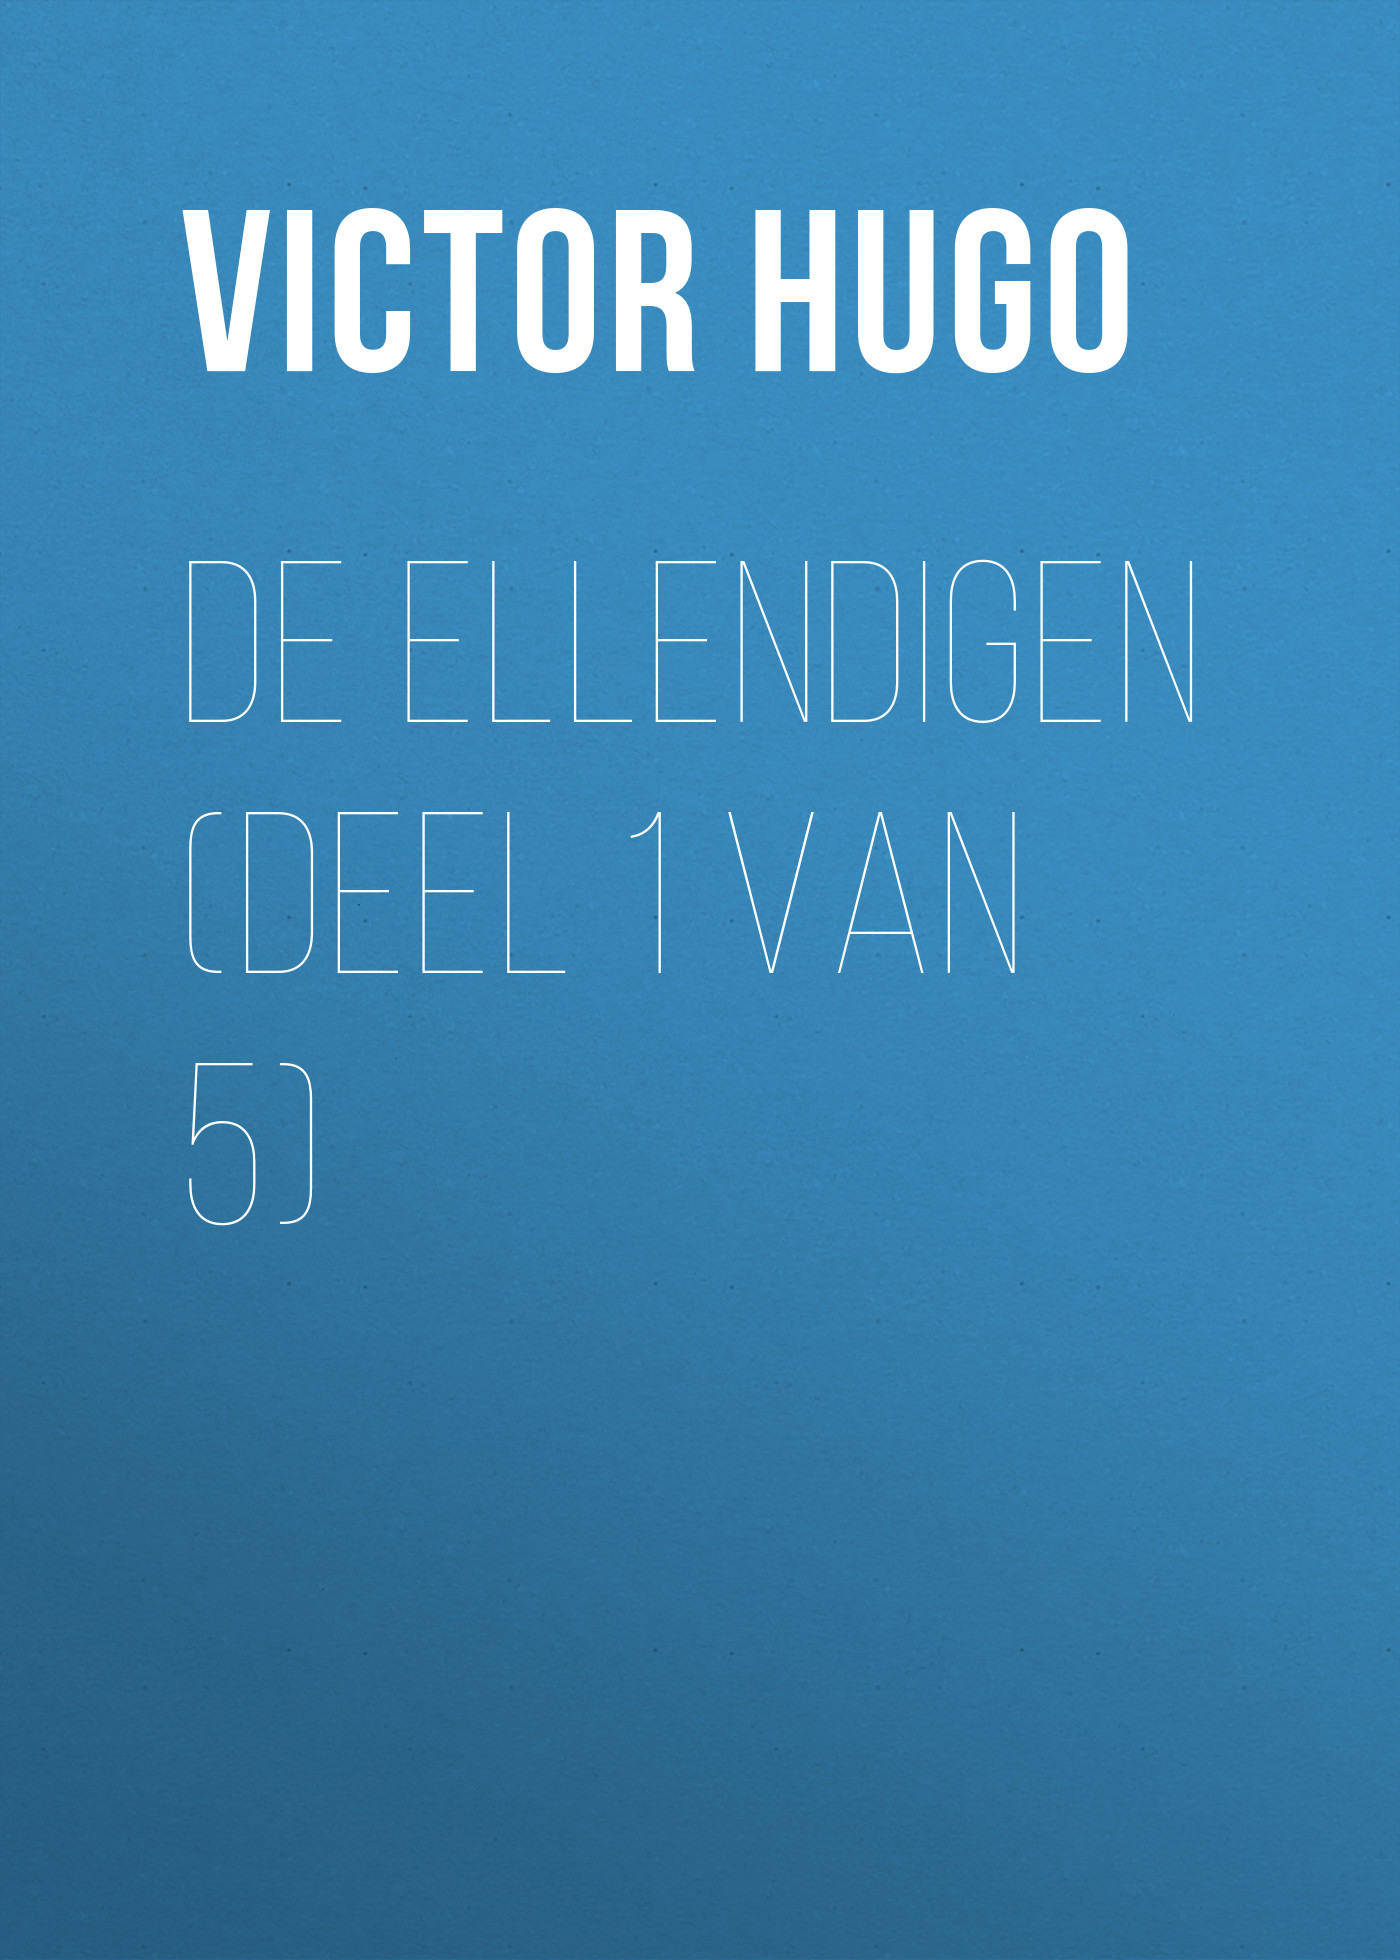 Книга De Ellendigen (Deel 1 van 5) из серии , созданная Victor Hugo, может относится к жанру Литература 19 века, Зарубежная старинная литература, Зарубежная классика. Стоимость электронной книги De Ellendigen (Deel 1 van 5) с идентификатором 25230140 составляет 0 руб.